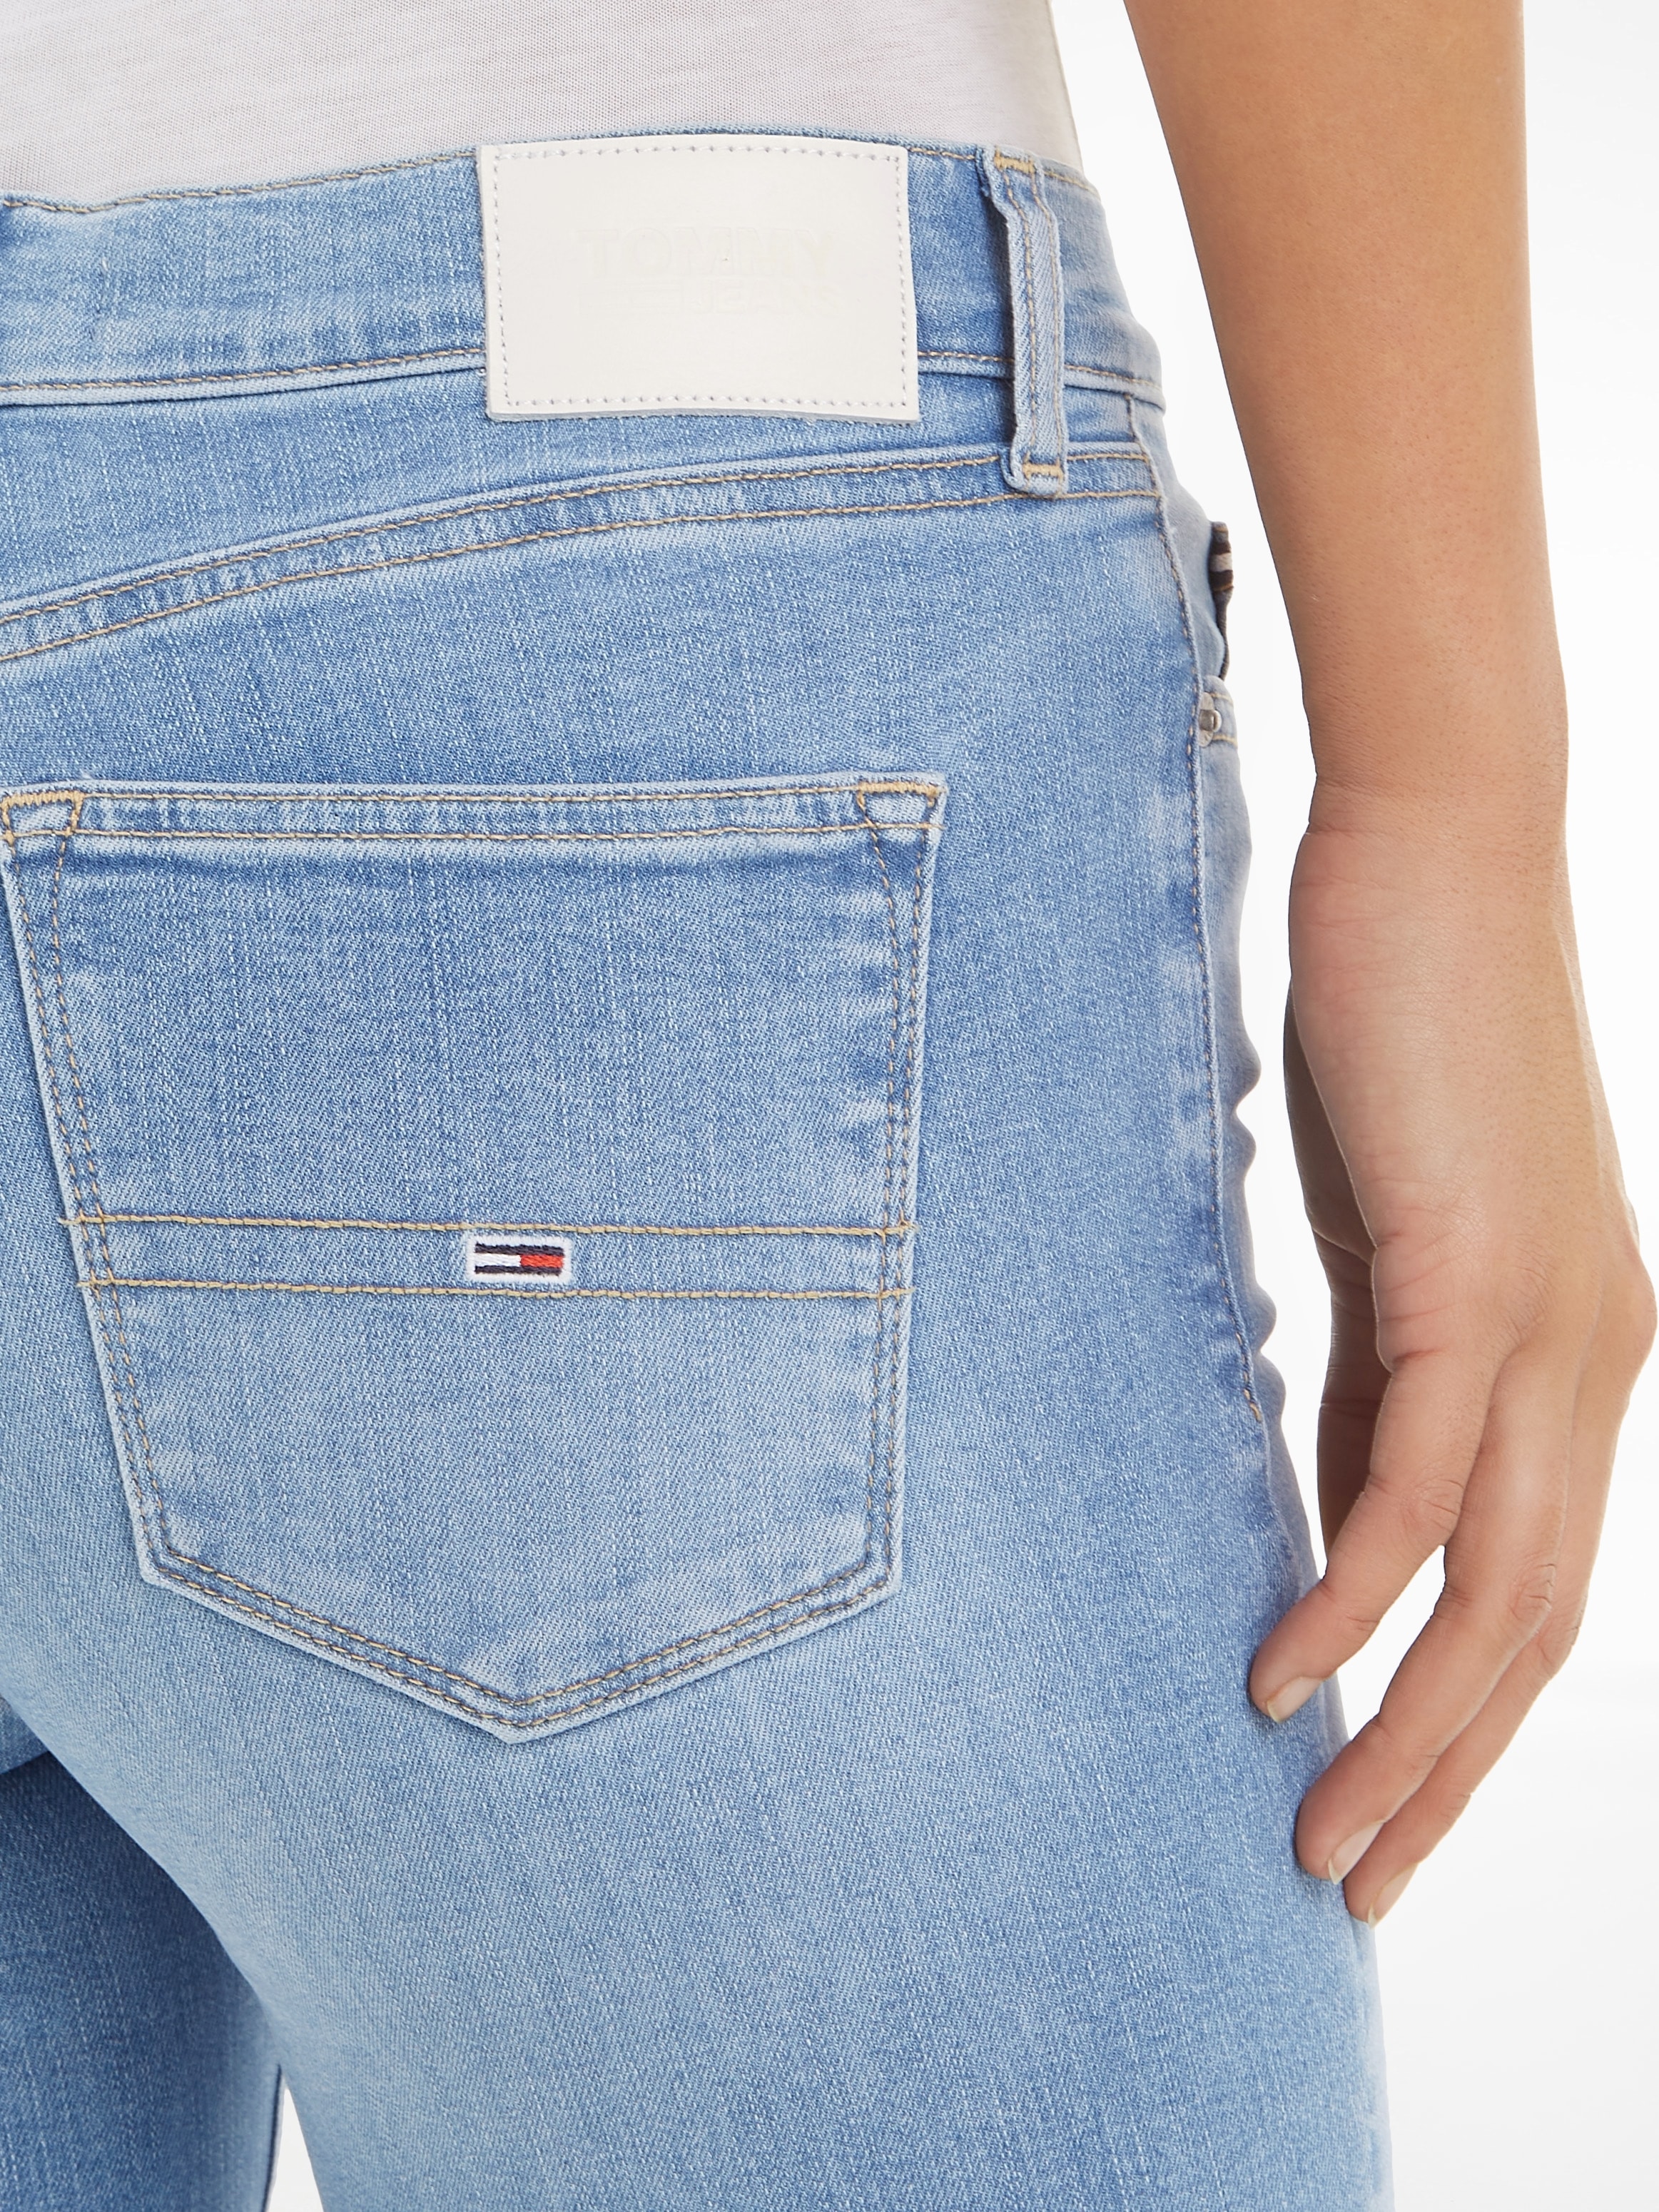 Tommy Jeans Skinny-fit-Jeans, mit dezenten Labelapplikationen shoppen